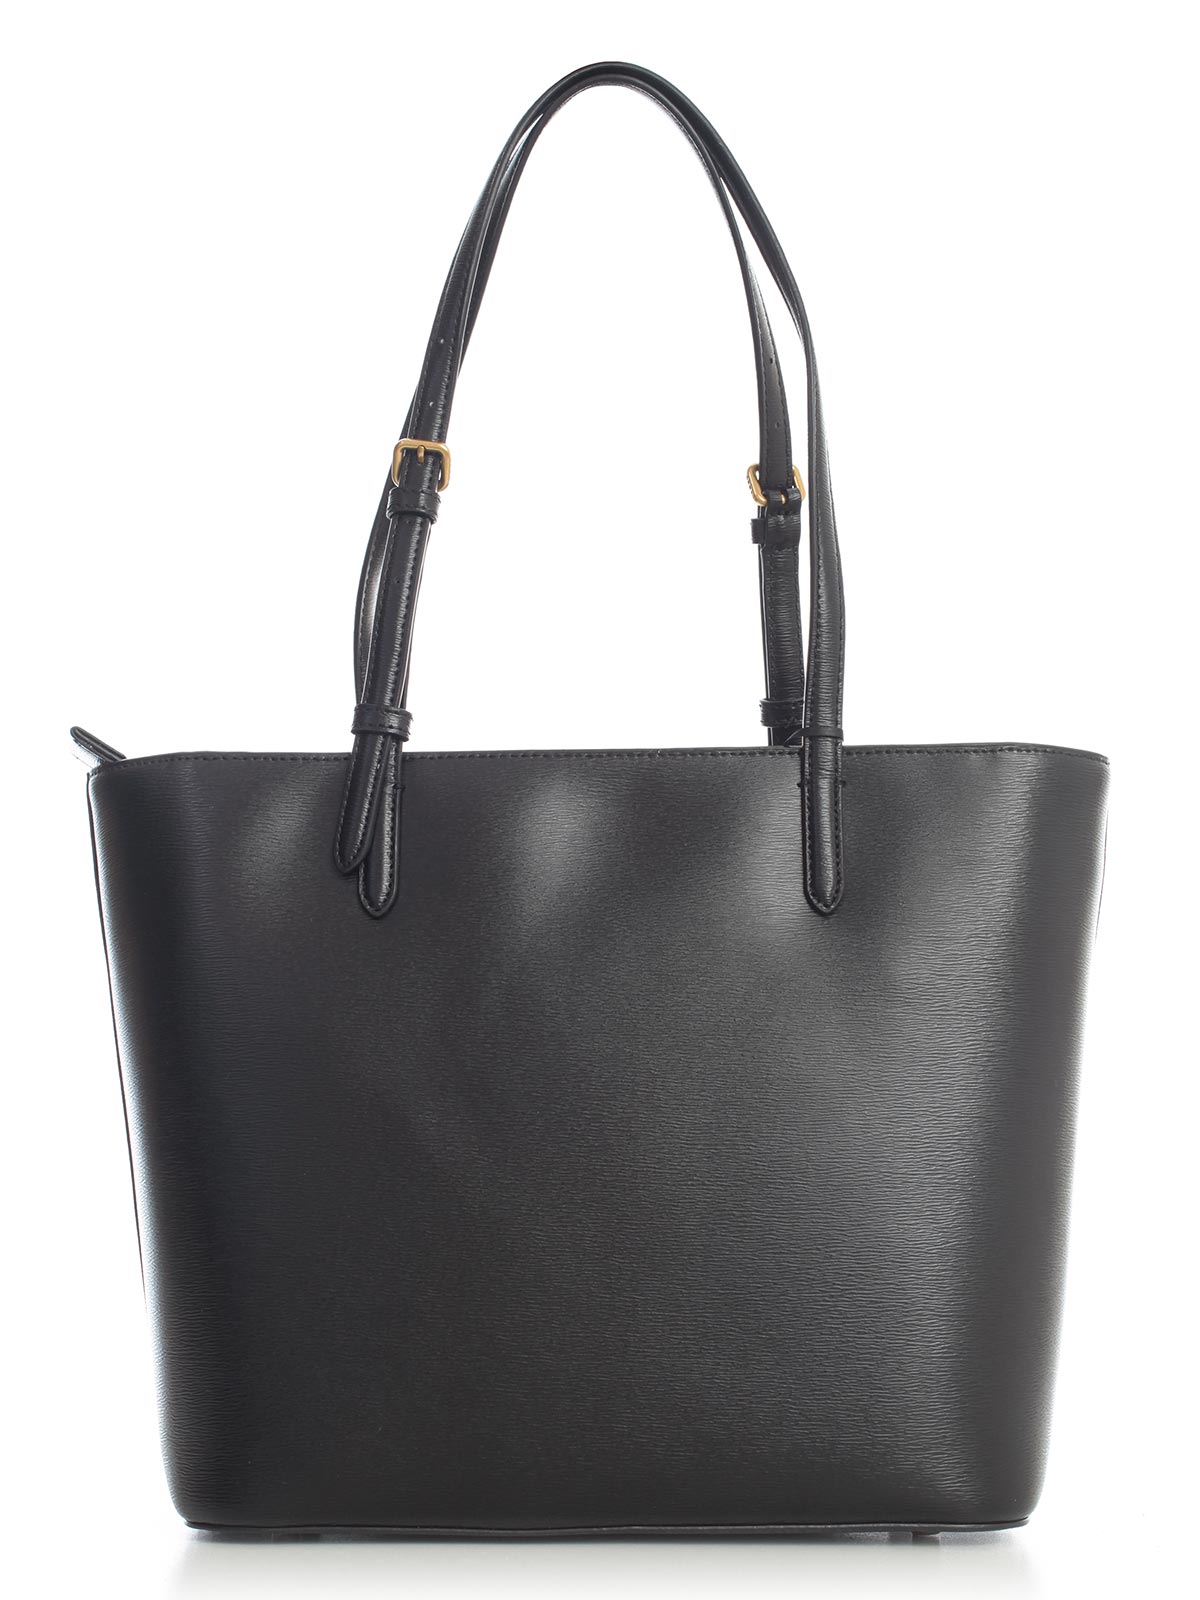 Dkny Handbags For Women | semashow.com